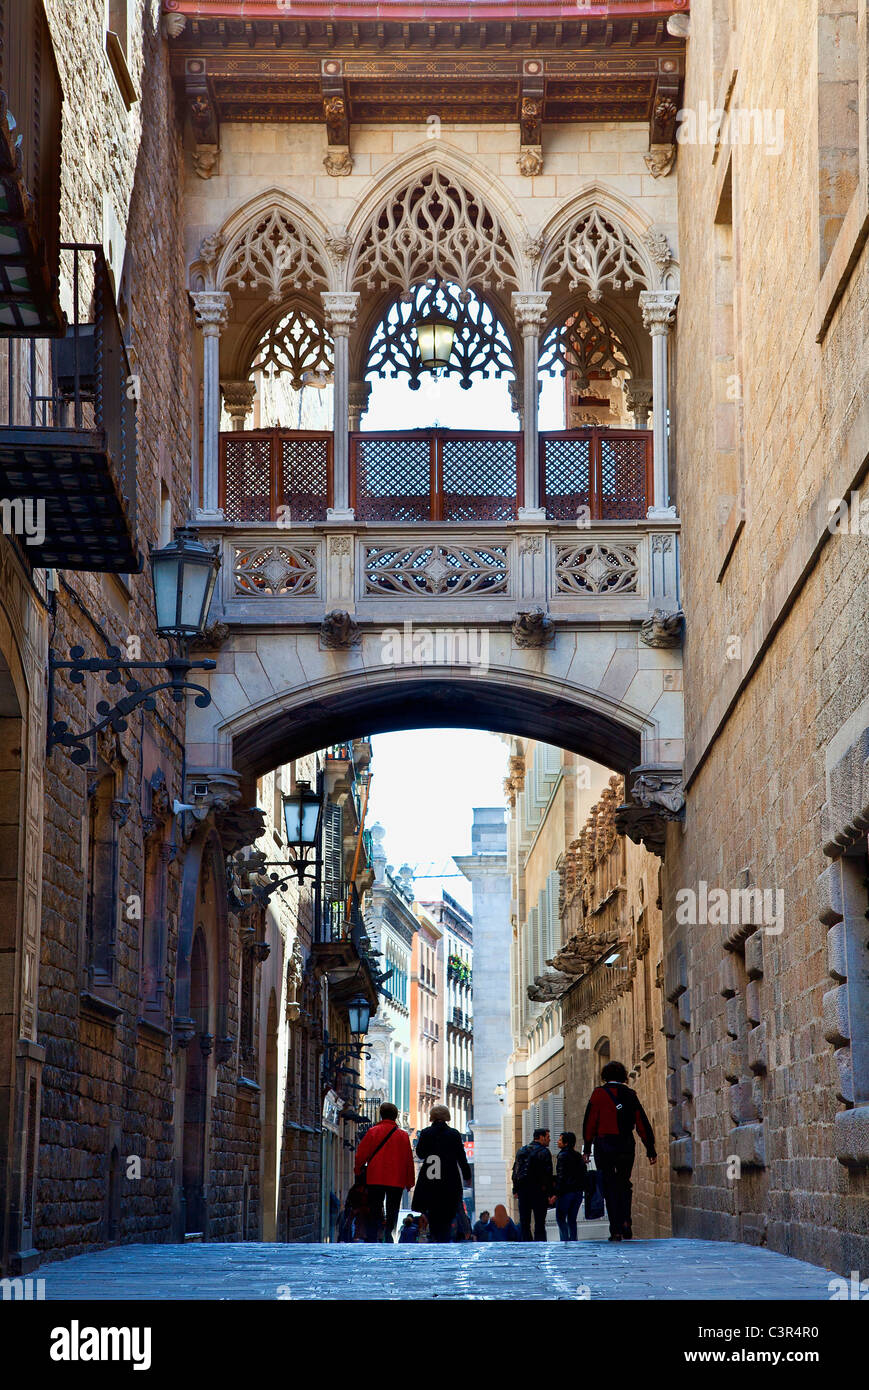 Barcelone, ruelle néo-gothique datant de 1928 Banque D'Images